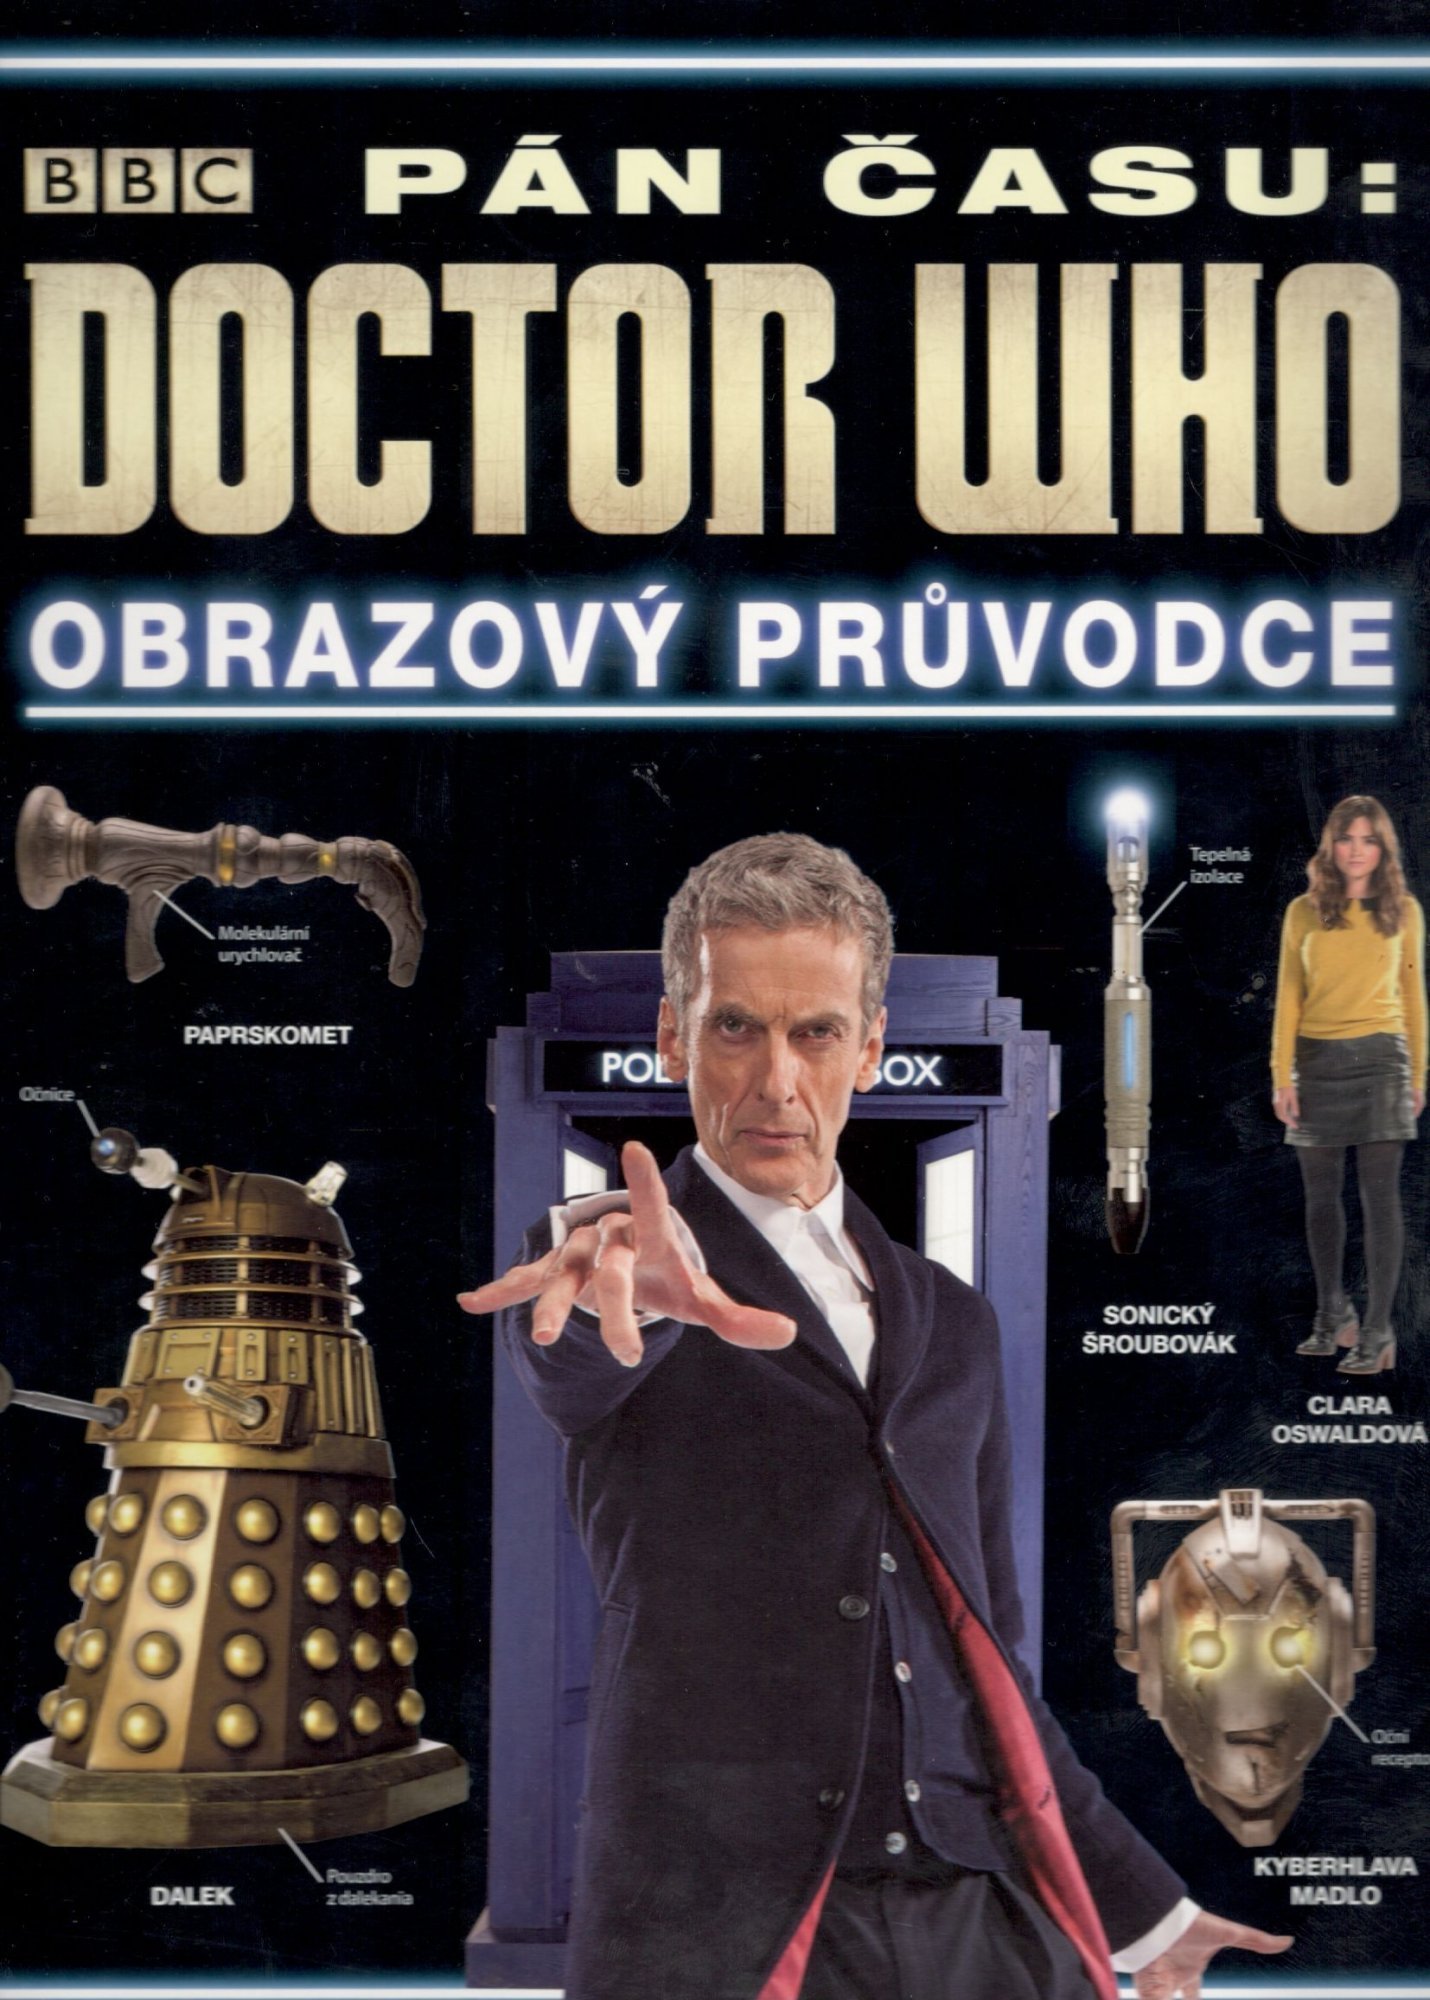 Doctor Who - Obrazový průvodce seriálem Pán času - různí